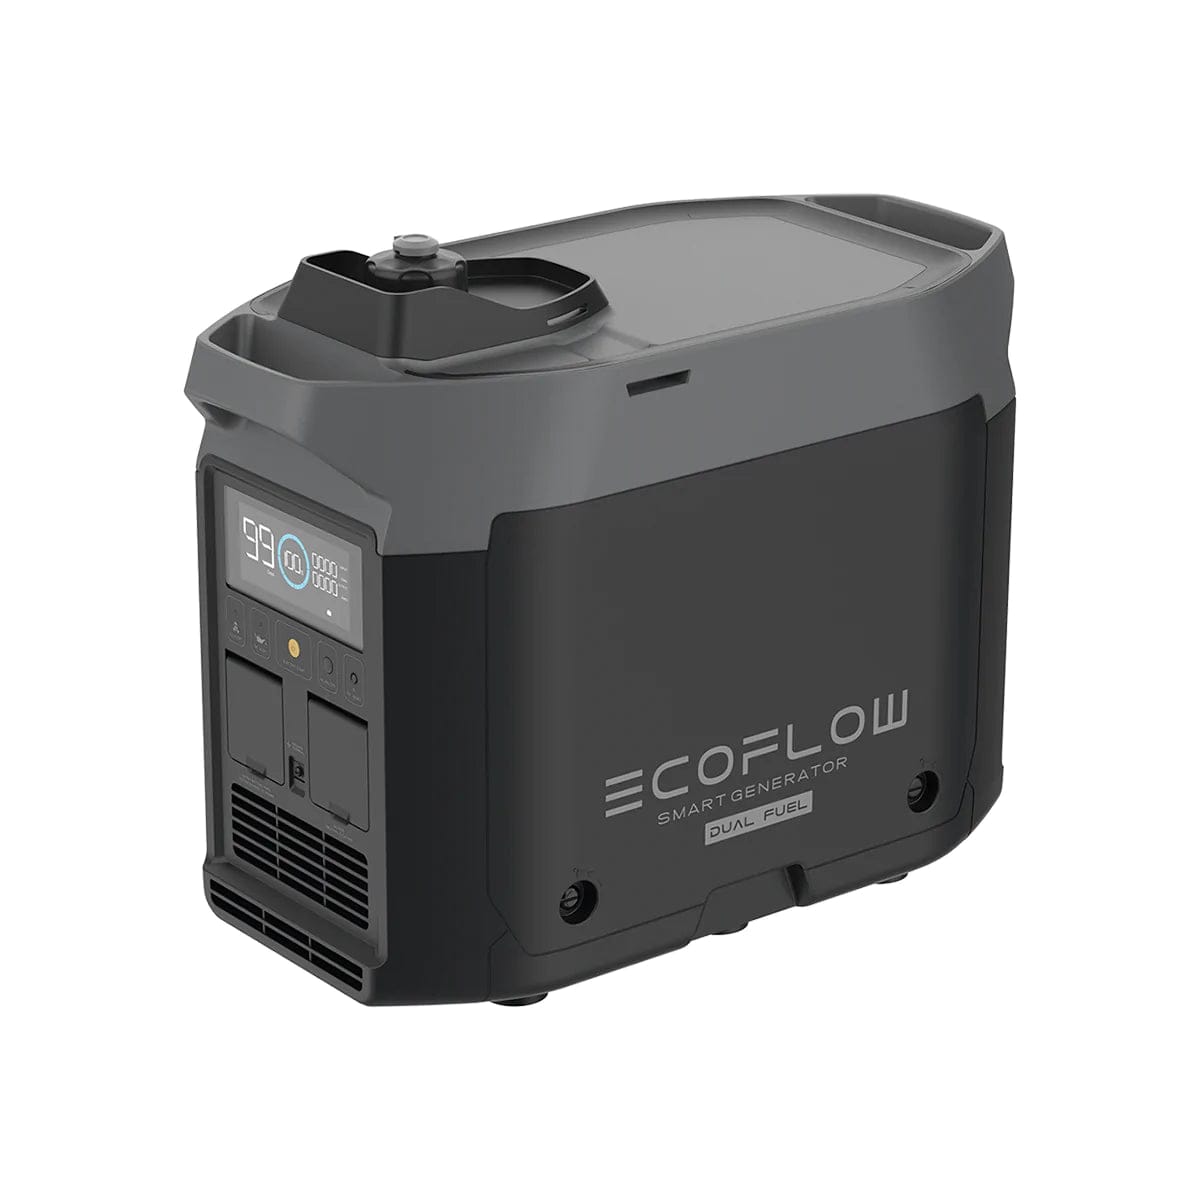 EcoFlow Delta Max 1600 + 1x 1800W Dual Fuel Smart Generator Kit